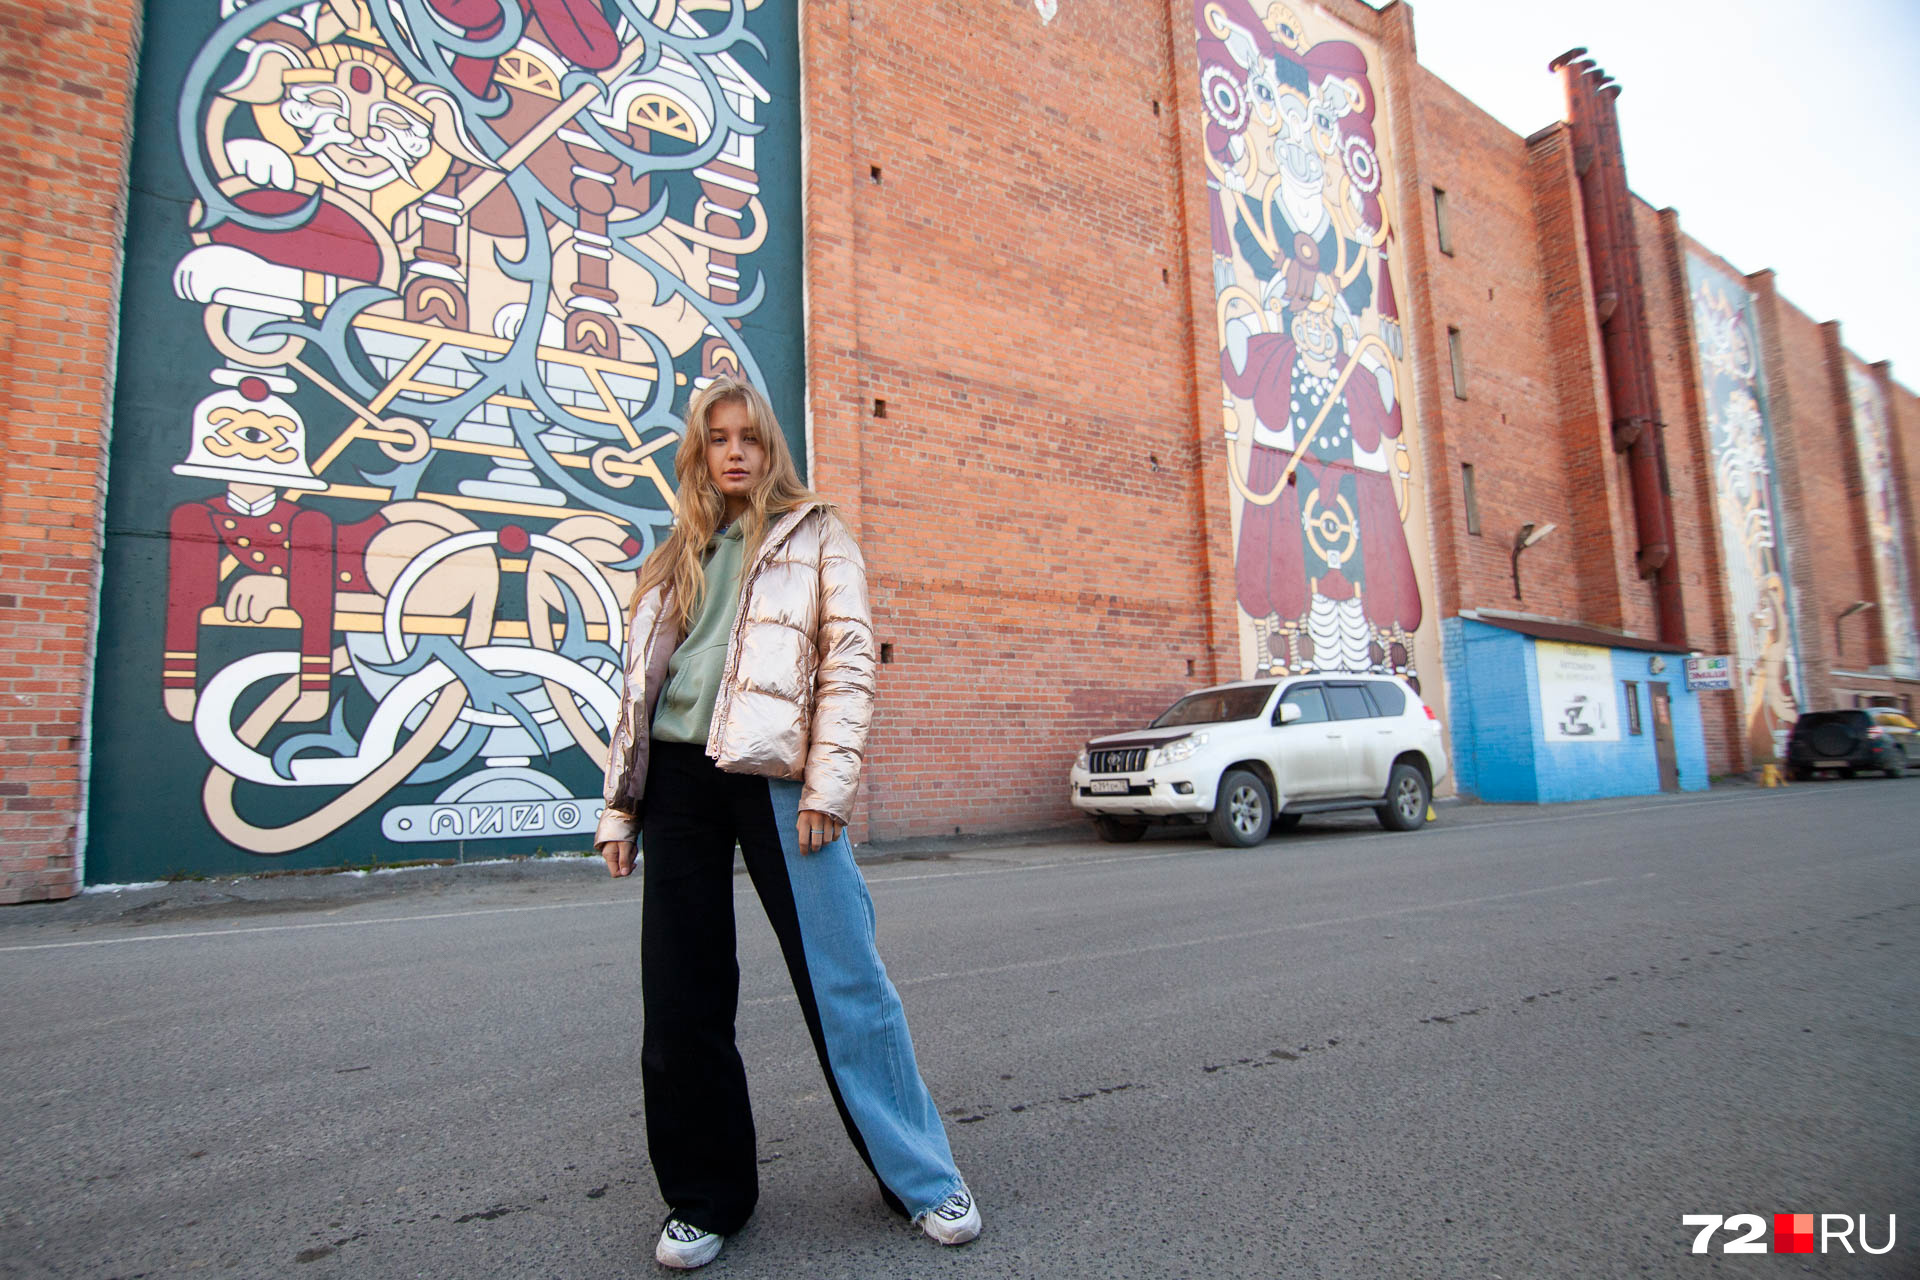 Лиза Артюхова (модель на фото) была одним из организаторов фестиваля уличного искусства. Она говорит, что здание, на котором нарисовано граффити, — это шиномонтажка. Рисовать на нем было непросто, потому что ежедневно приходилось контролировать машины, подъезжающие к стене